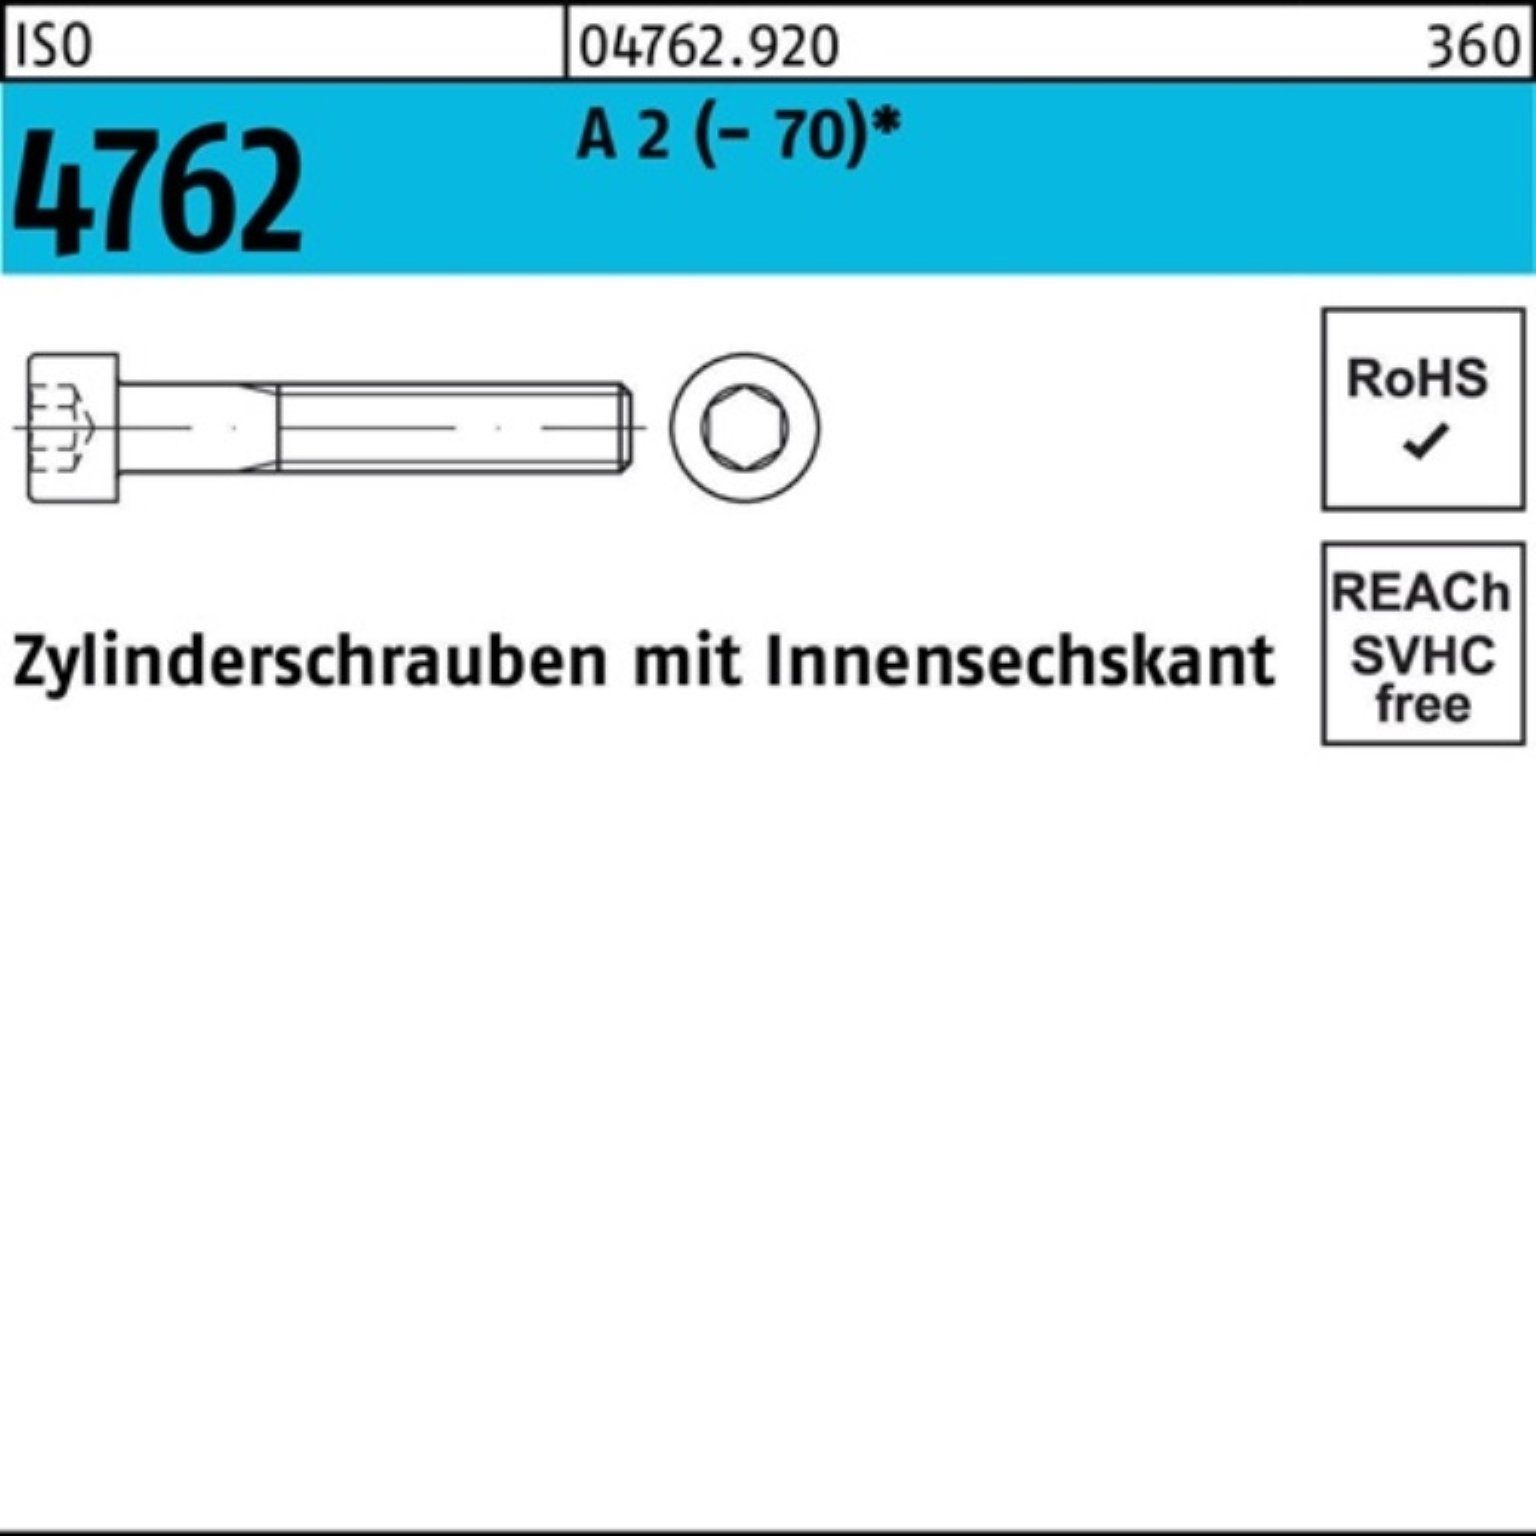 Innen-6kt (70) 2 A ISO 4762 Zylinderschraube Reyher 120 Zylinderschraube 1 M20x S Pack 100er